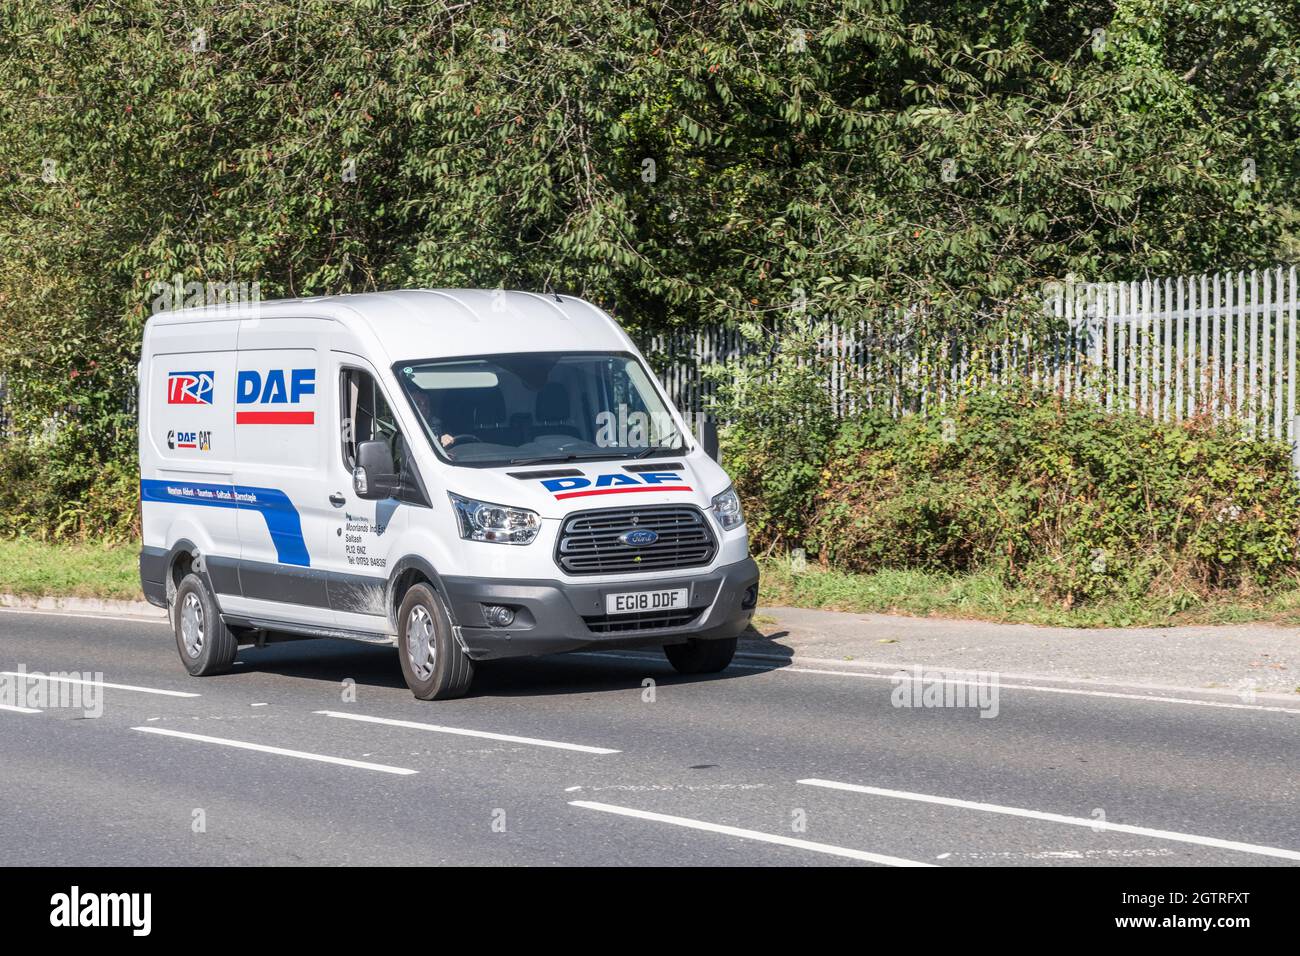 Lieferwagen für DAF & Cat-Ersatzteile, der bergauf auf auf der Landstraße fährt. Für UK Fahrer Mangel, Auto-Ersatzteile Lieferung während Covid, UK Transport, Ford Vans. Stockfoto